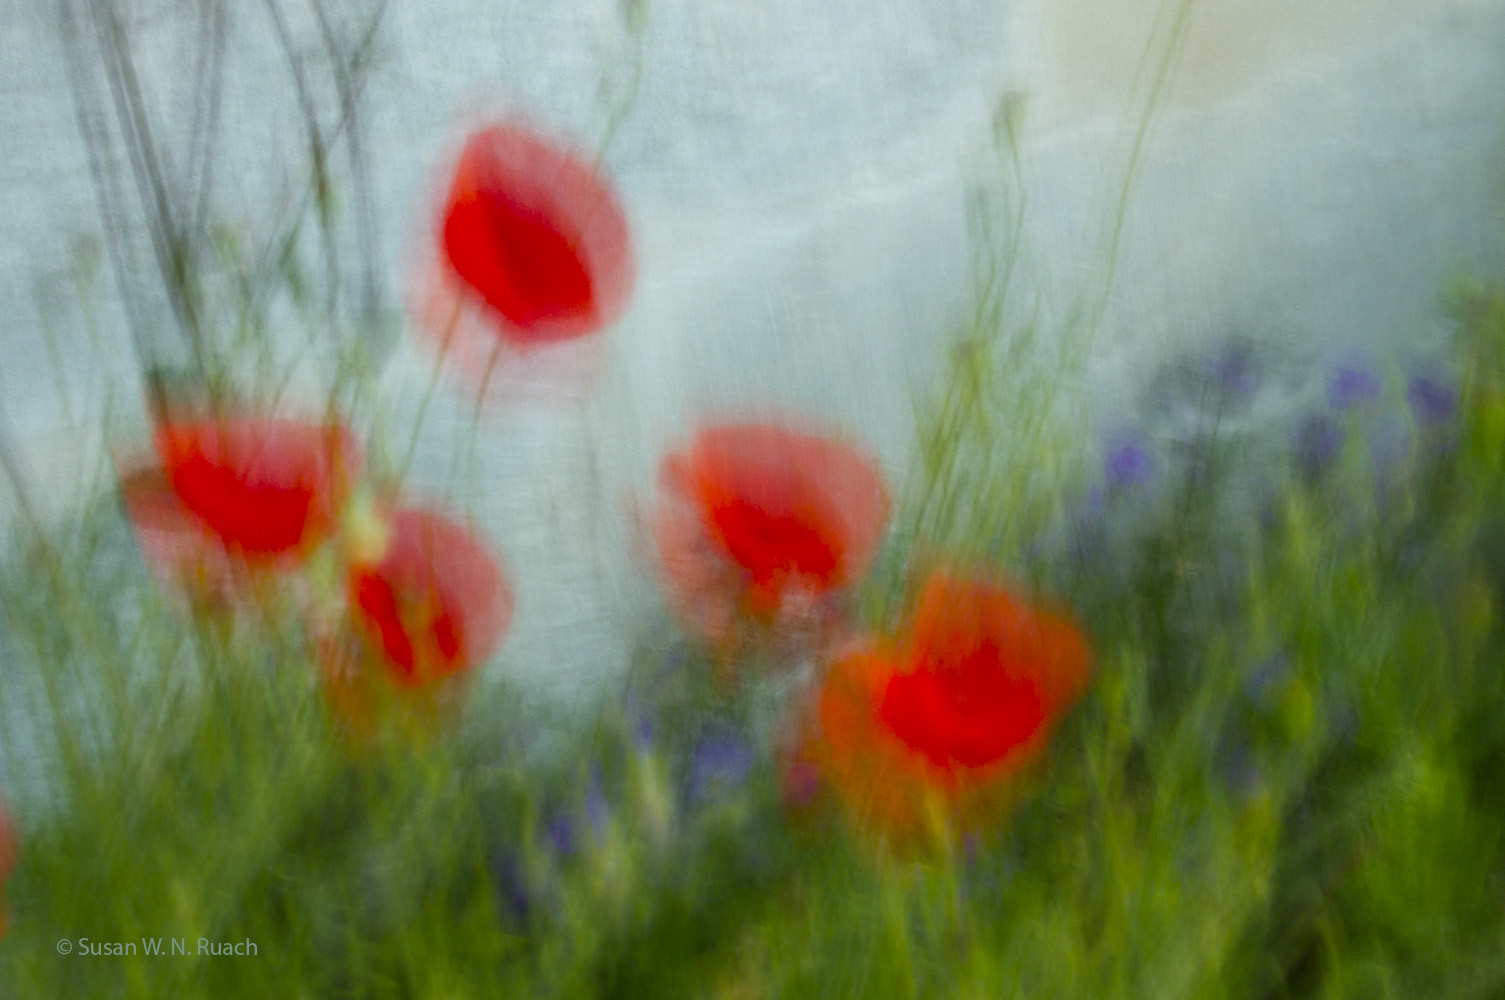 Monet's Poppies